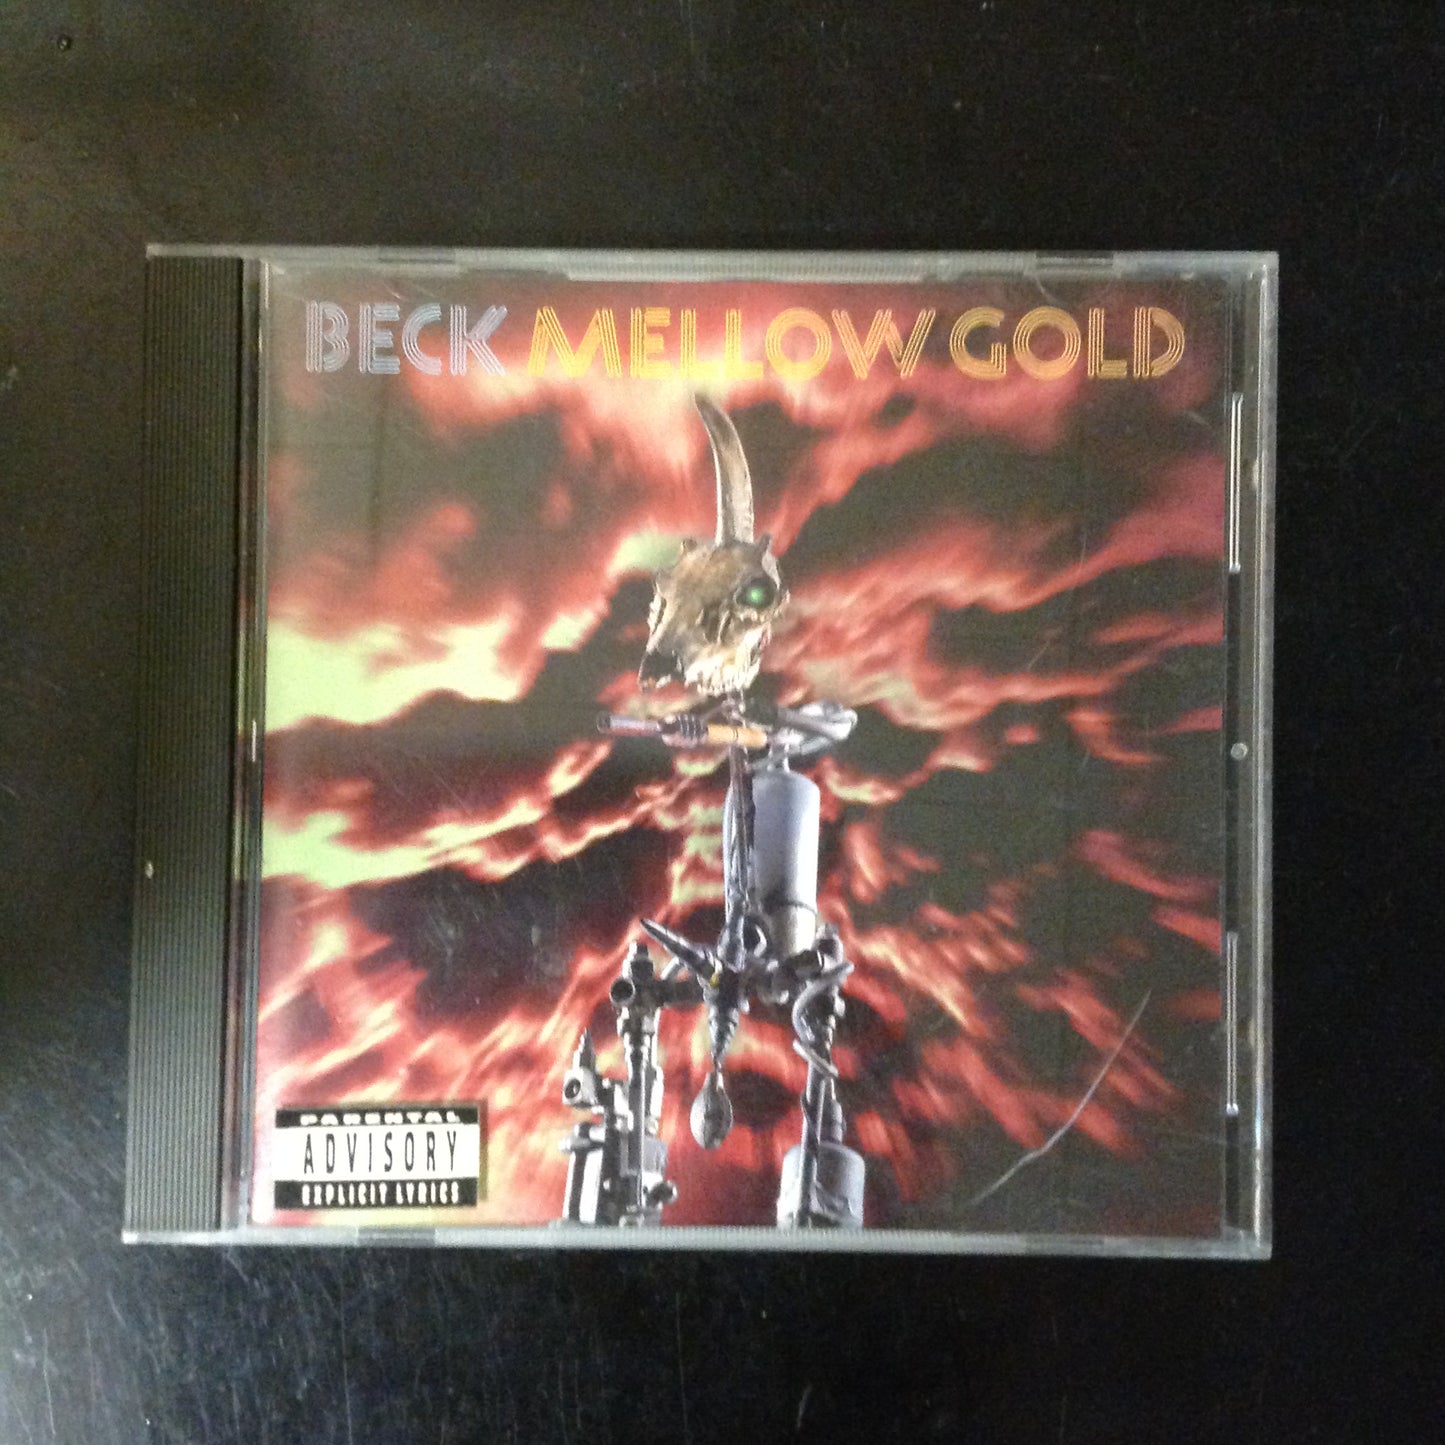 BARGAIN CD Beck Mellow Gold DGCD-24634